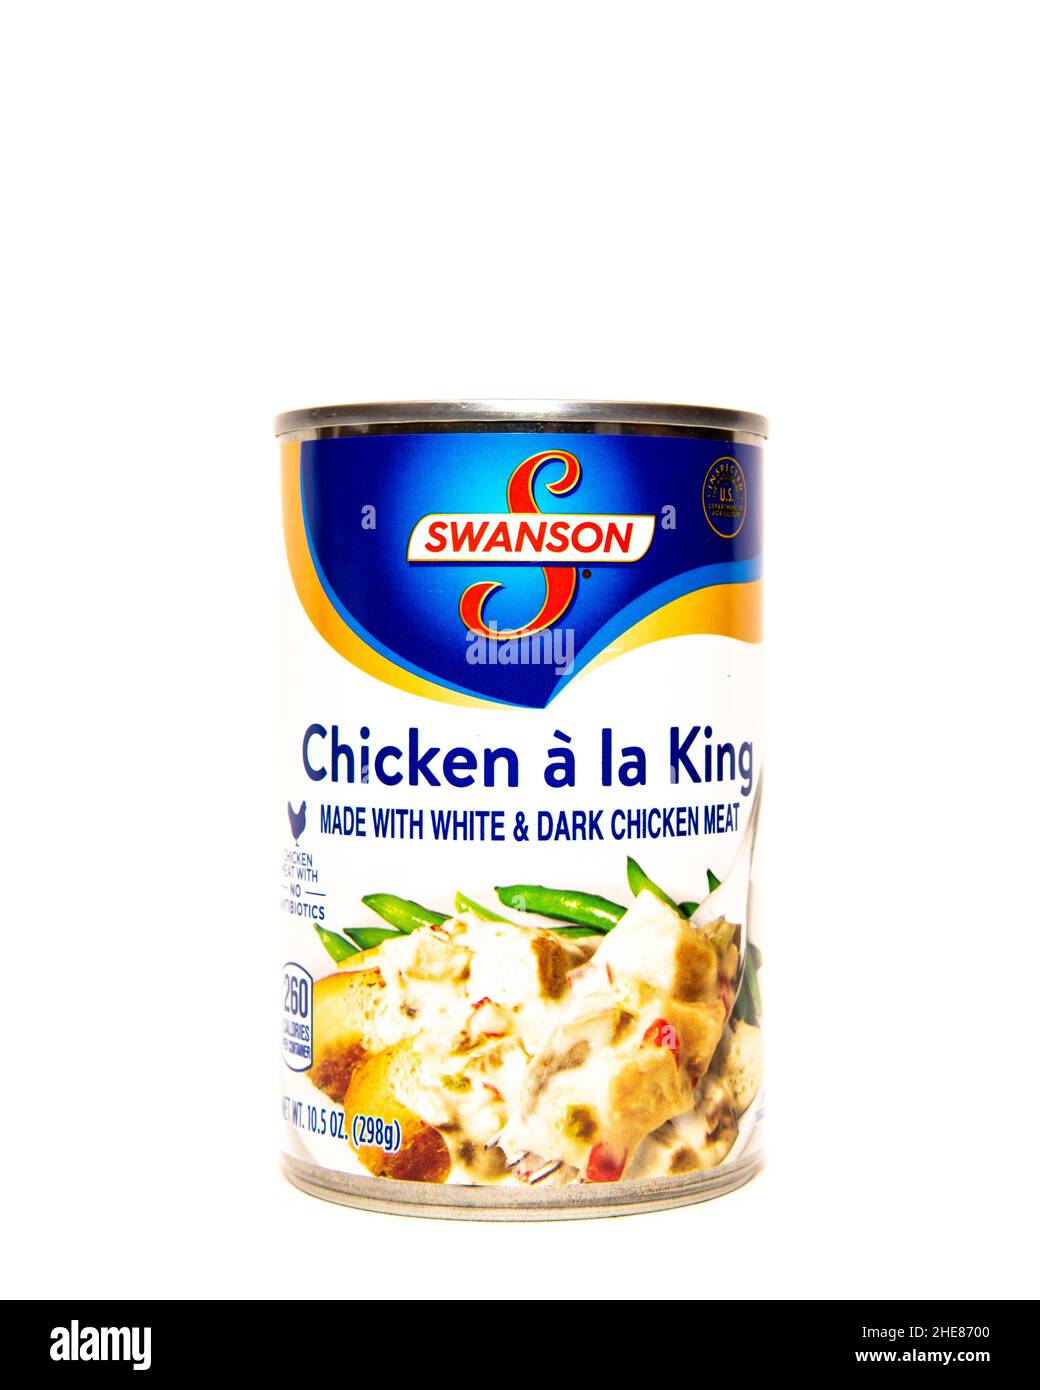 Una lattina di Swanson Chicken a la King, fatta con carne di pollo bianca e scura, un pasto pronto per riscaldare e mangiare. Foto Stock